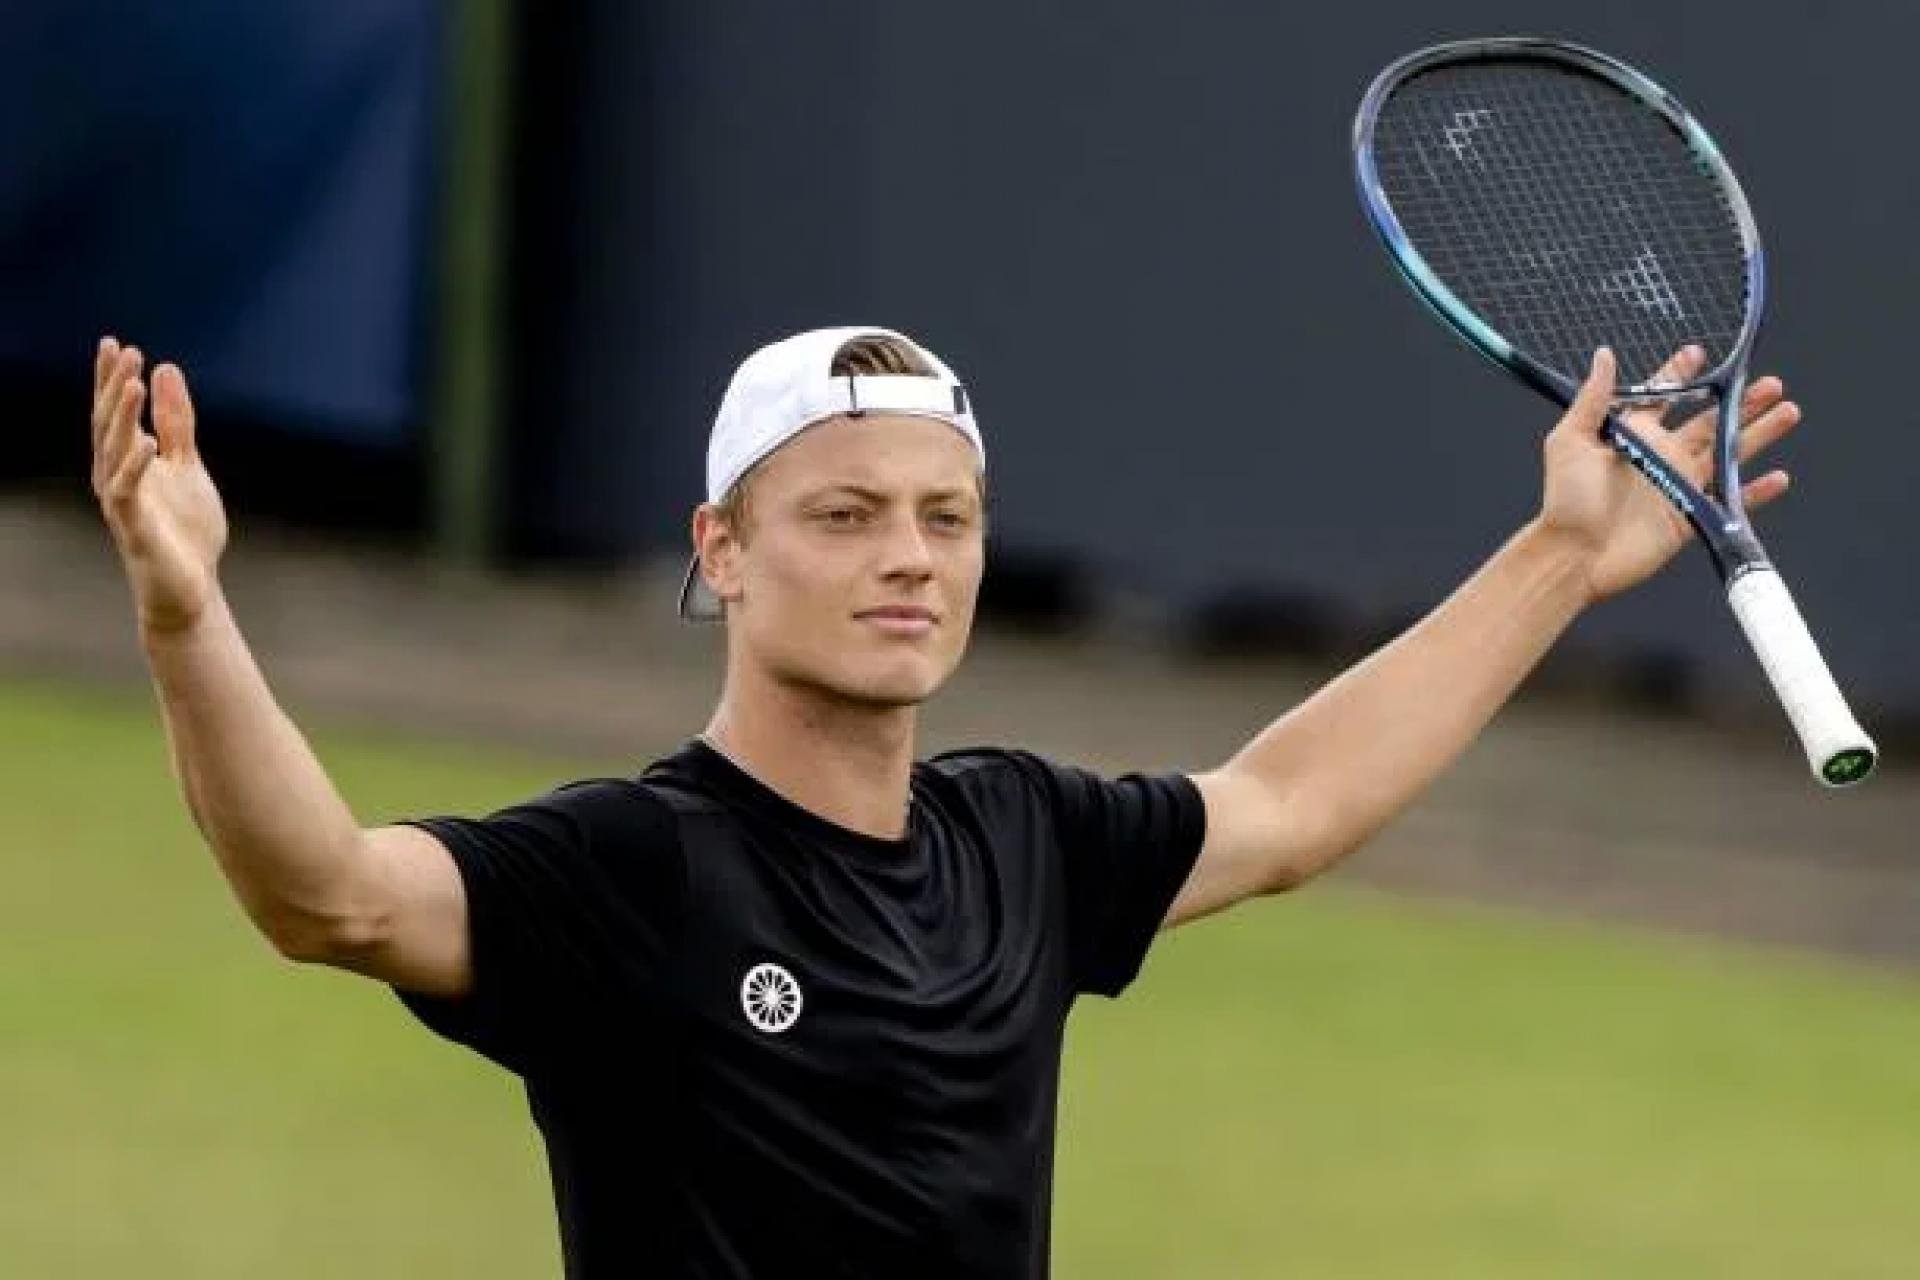  Olandezul Tim van Rijthoven, care a făcut senzaţie la ‘s-Hertogenbosch, a primit wild card pentru Wimbledon